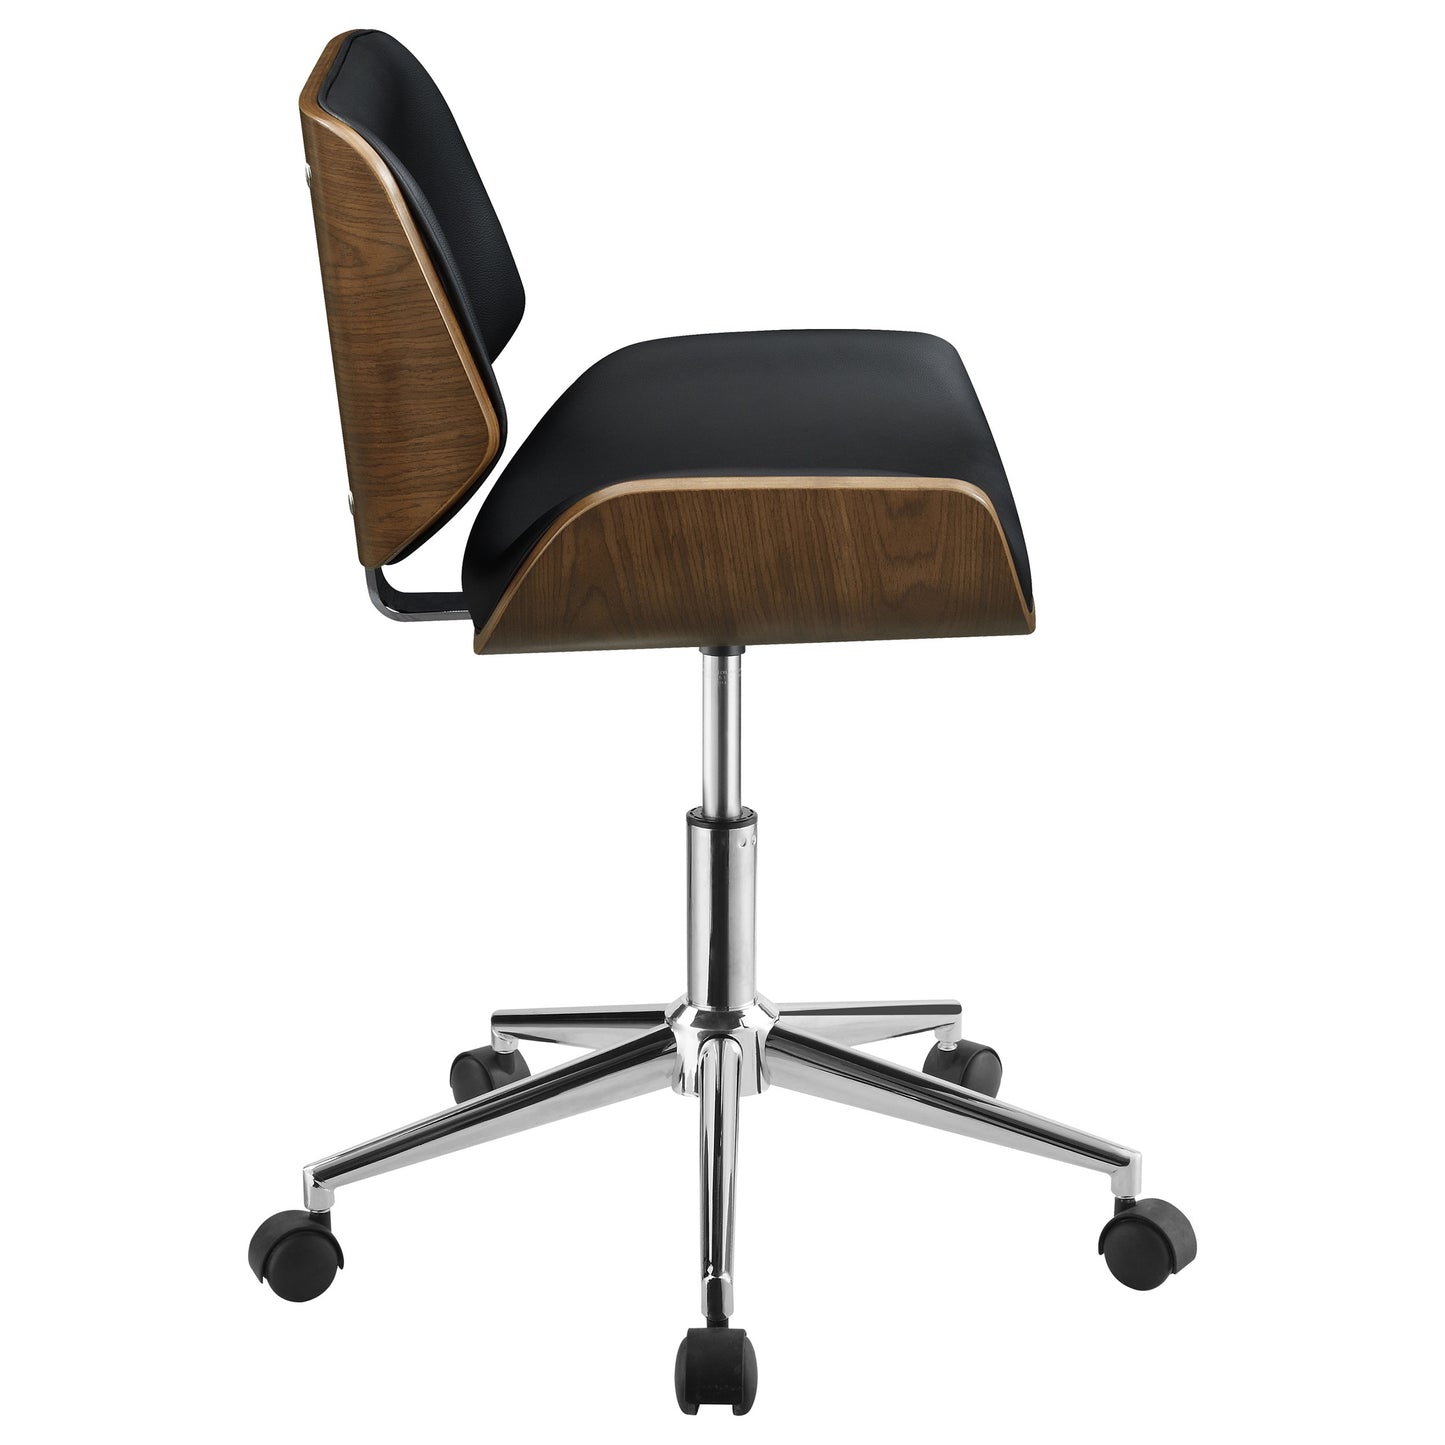 Addington Adjustable Height Office Chair Black and Chrome